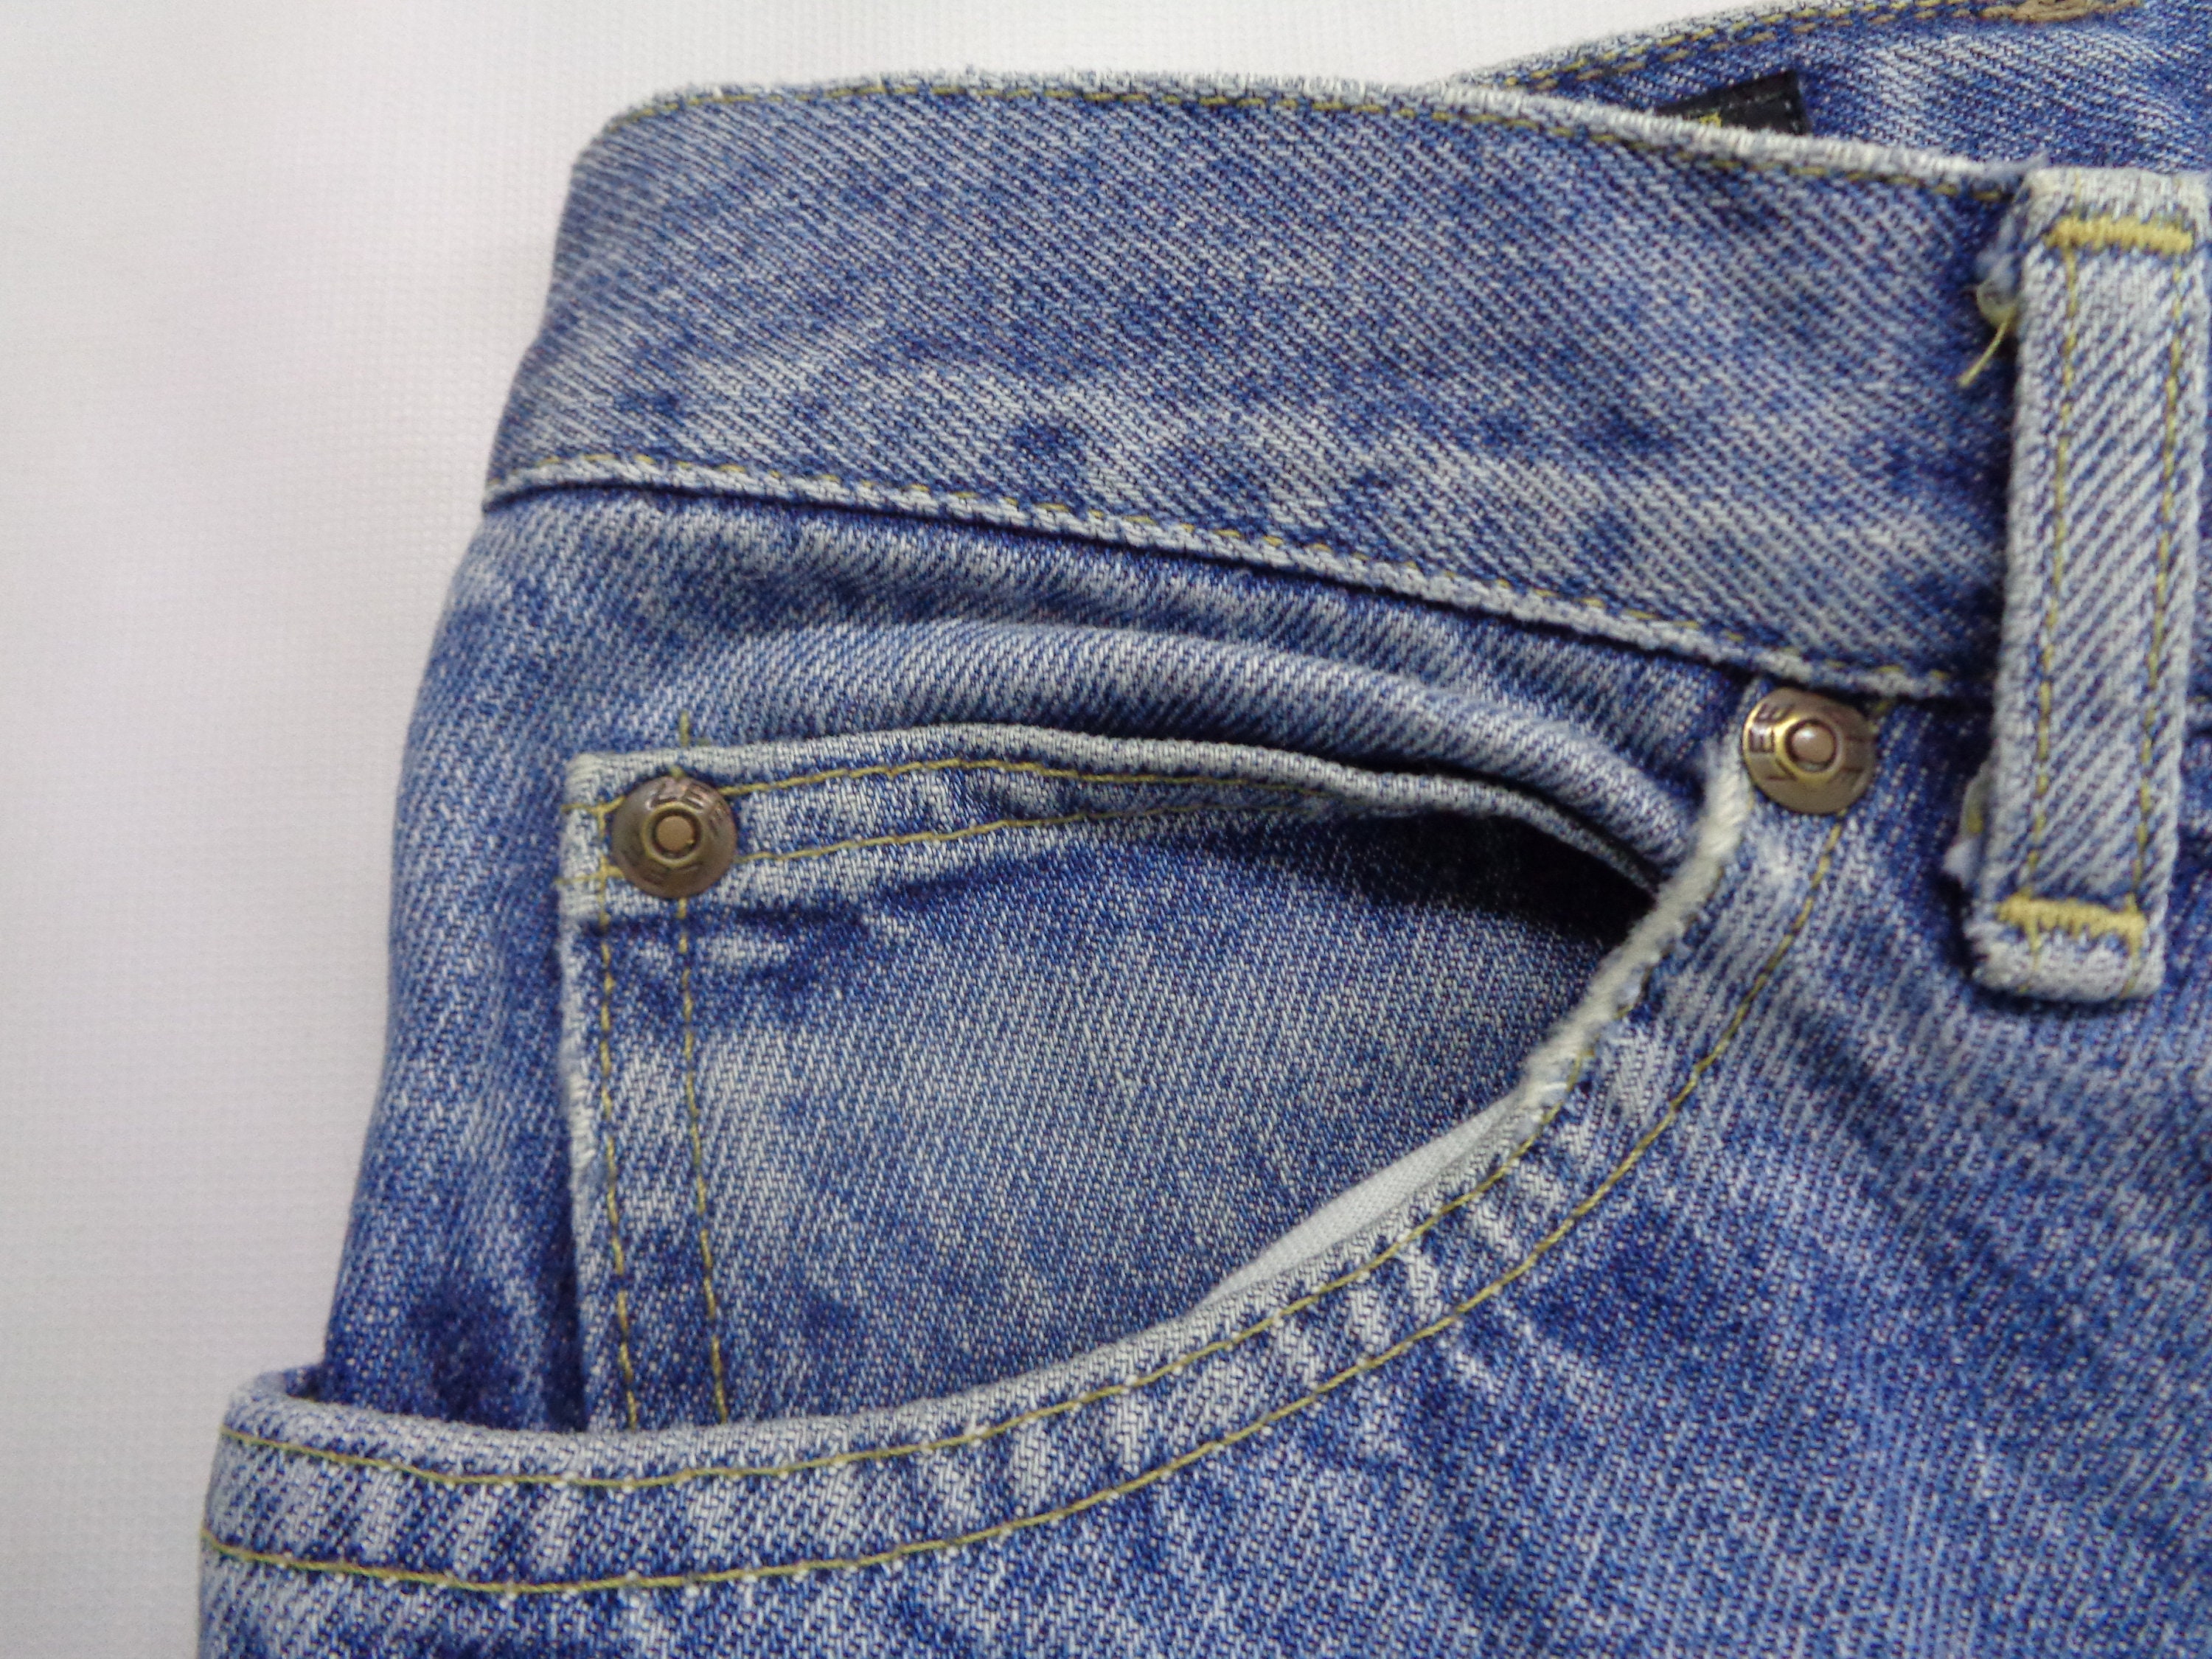 Lee Jeans Distressed Vintage Size 30 Lee Riders Denim Pants | Etsy